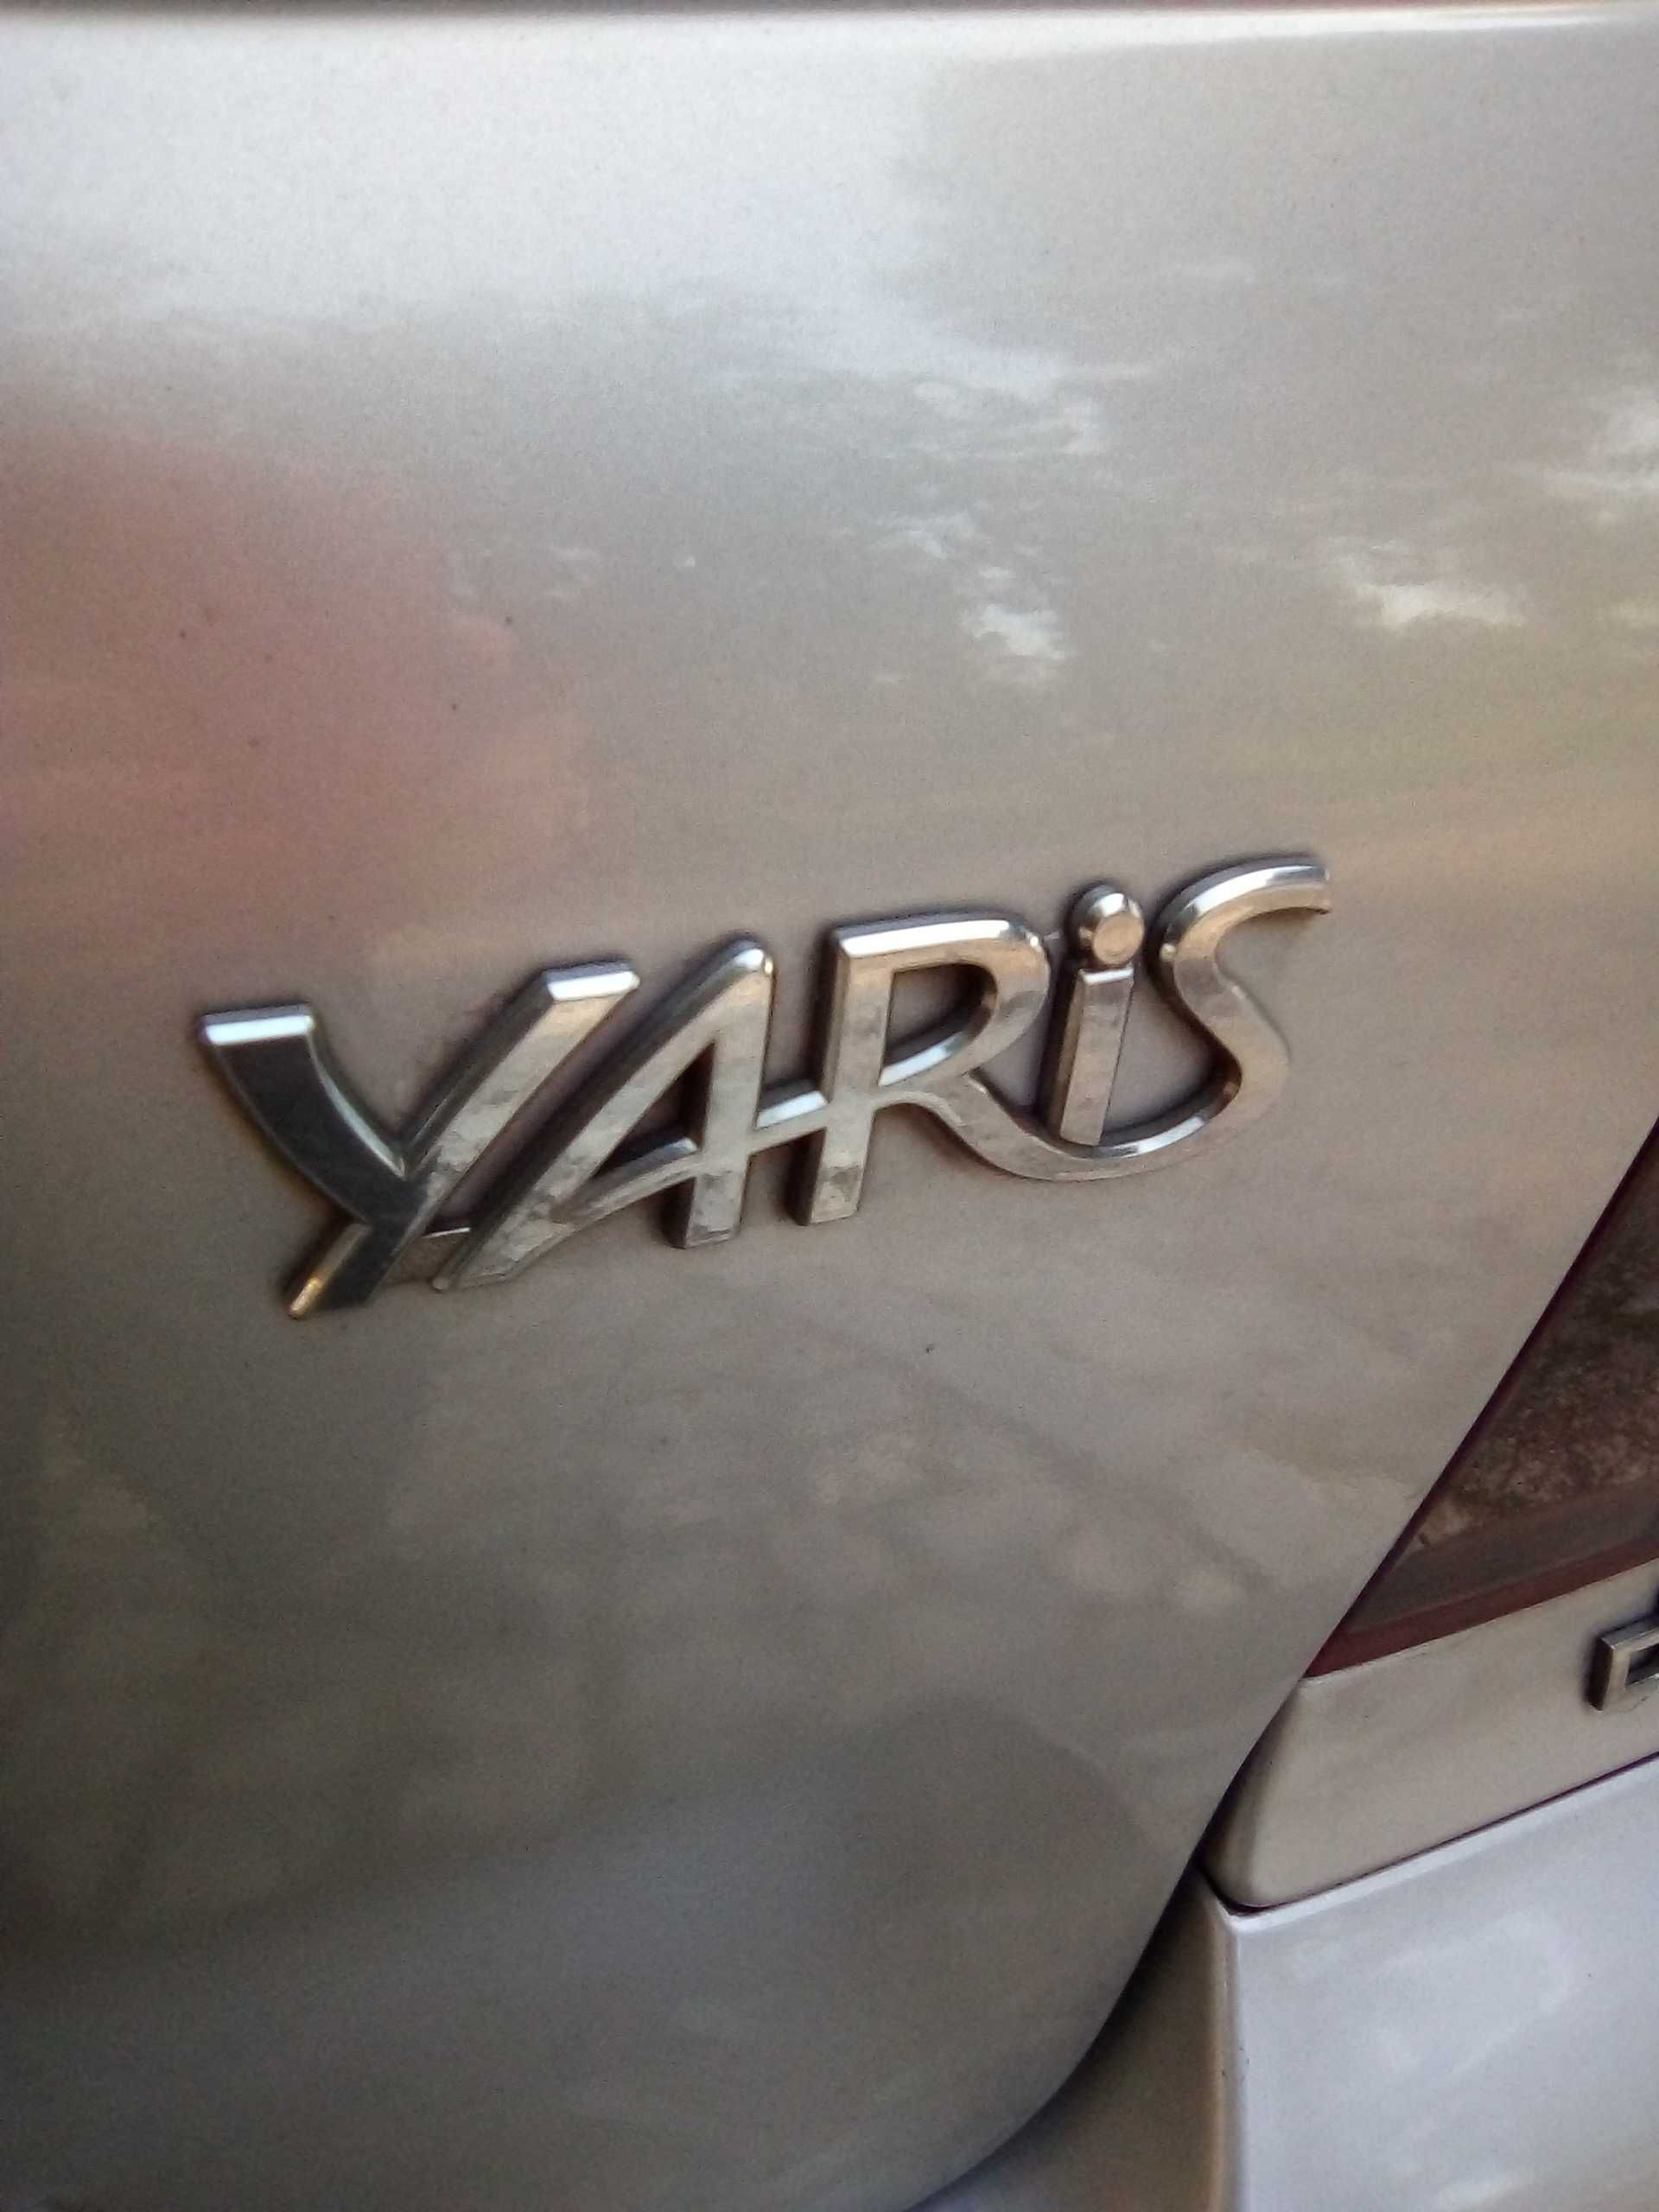 Motor Toyota Yaris 1.4, ano 2002, avariado.